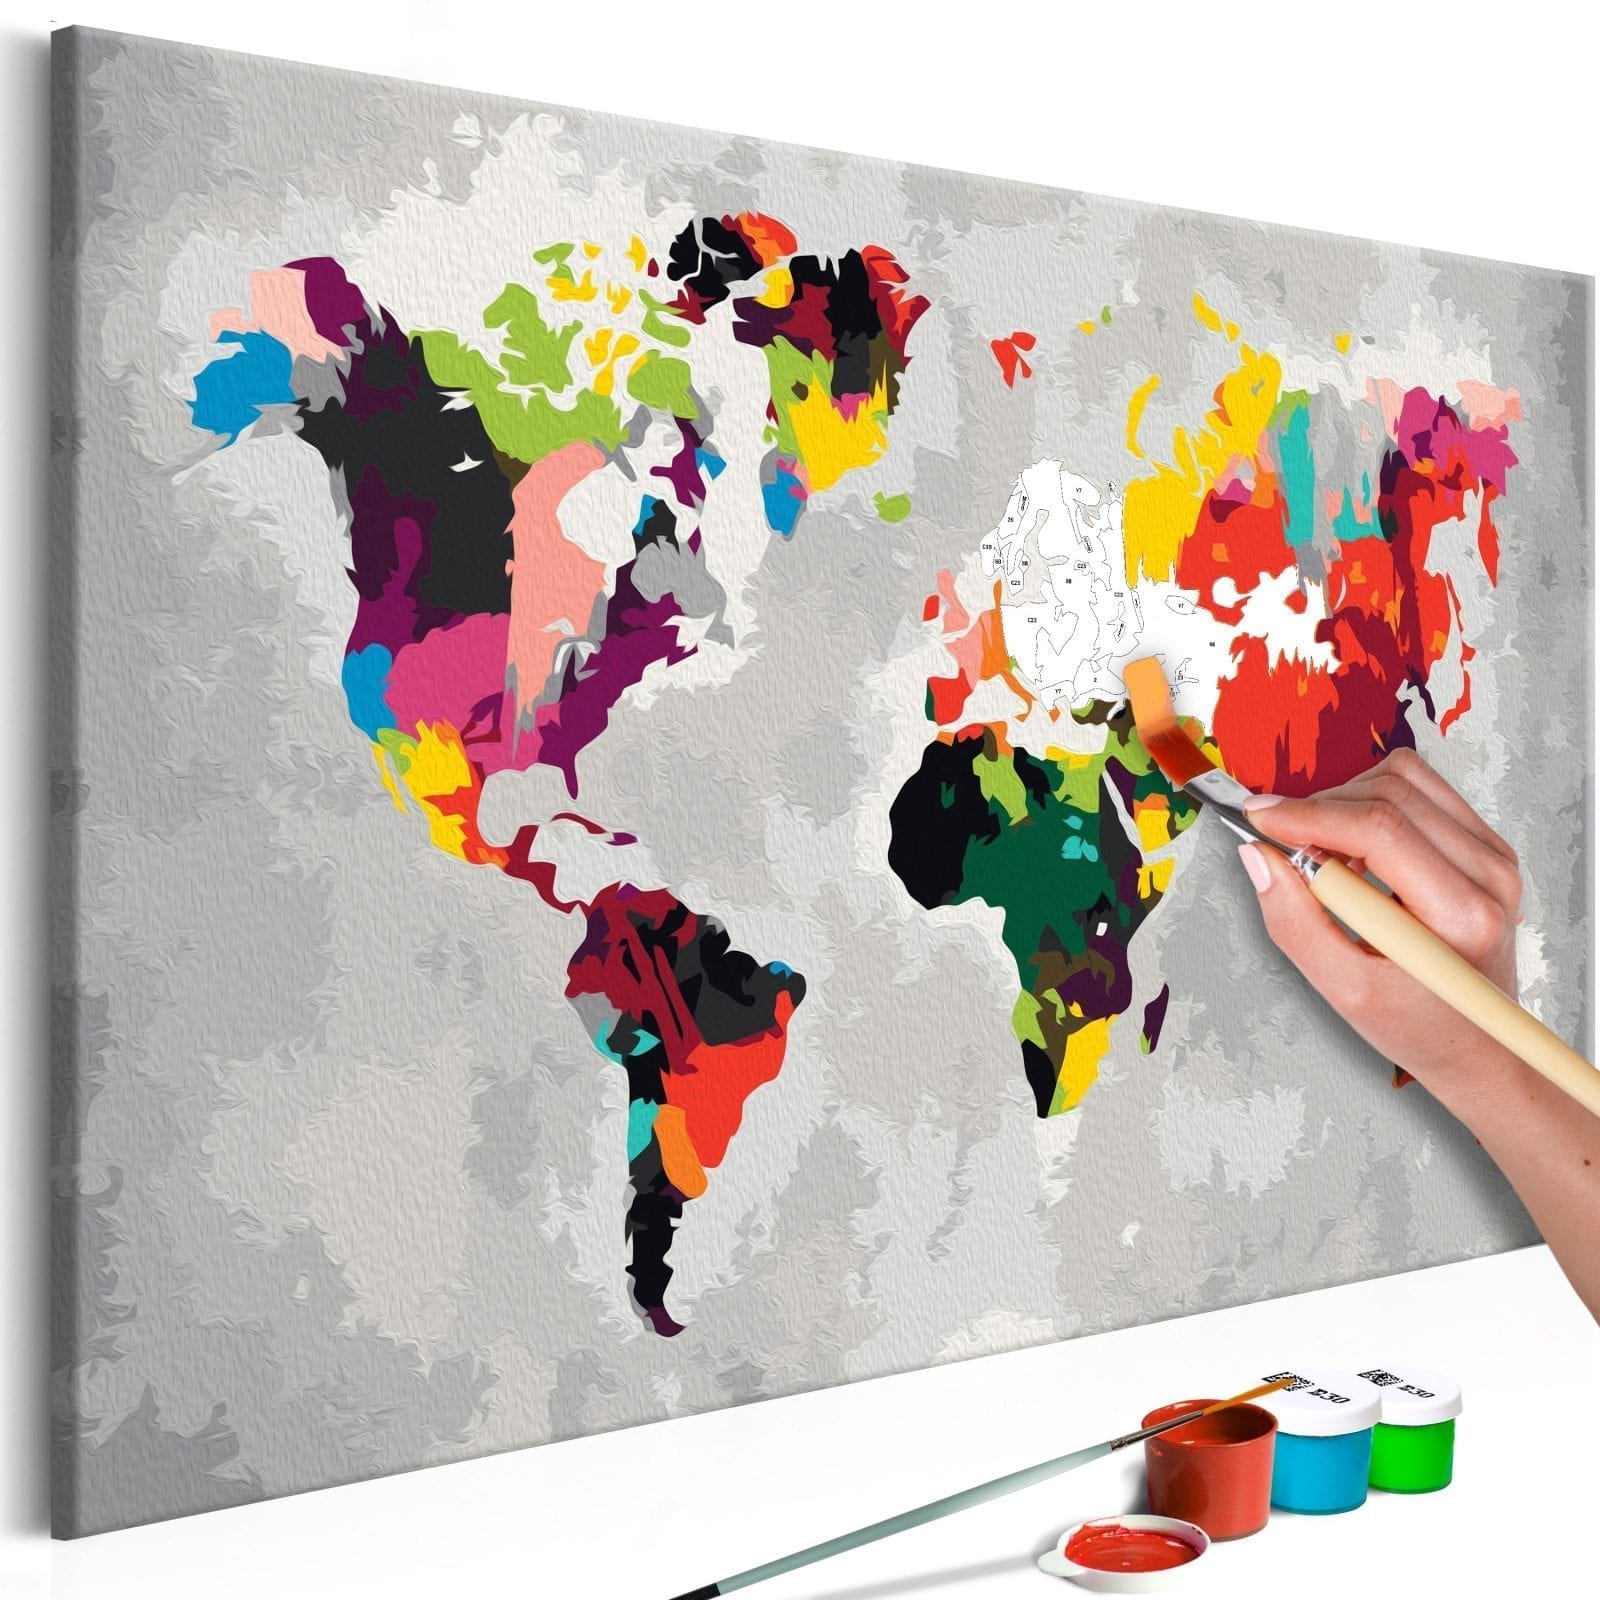 Cuadro para colorear - Mapa del mundo (colores llamativos) 1 | Potspintura.com